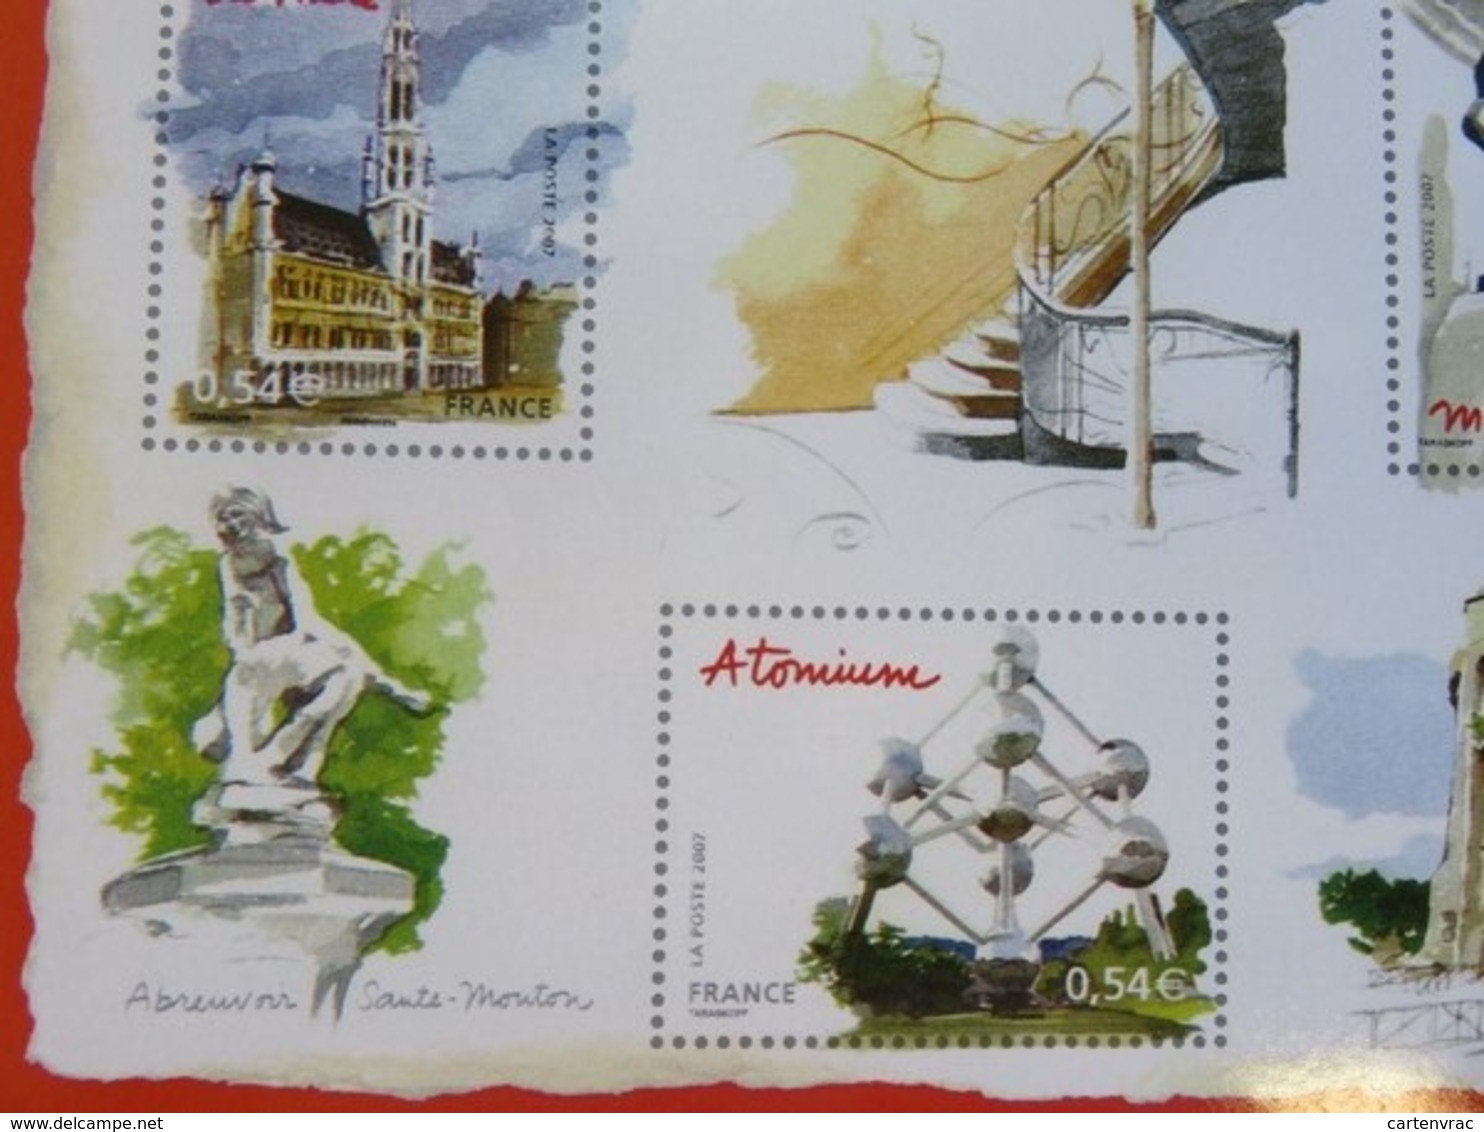 PAP - Carte Postale Pré-timbrée - Timbre International Mannequin Pis - Bruxelles Capitale Européenne - Série Capitales - Documents Of Postal Services